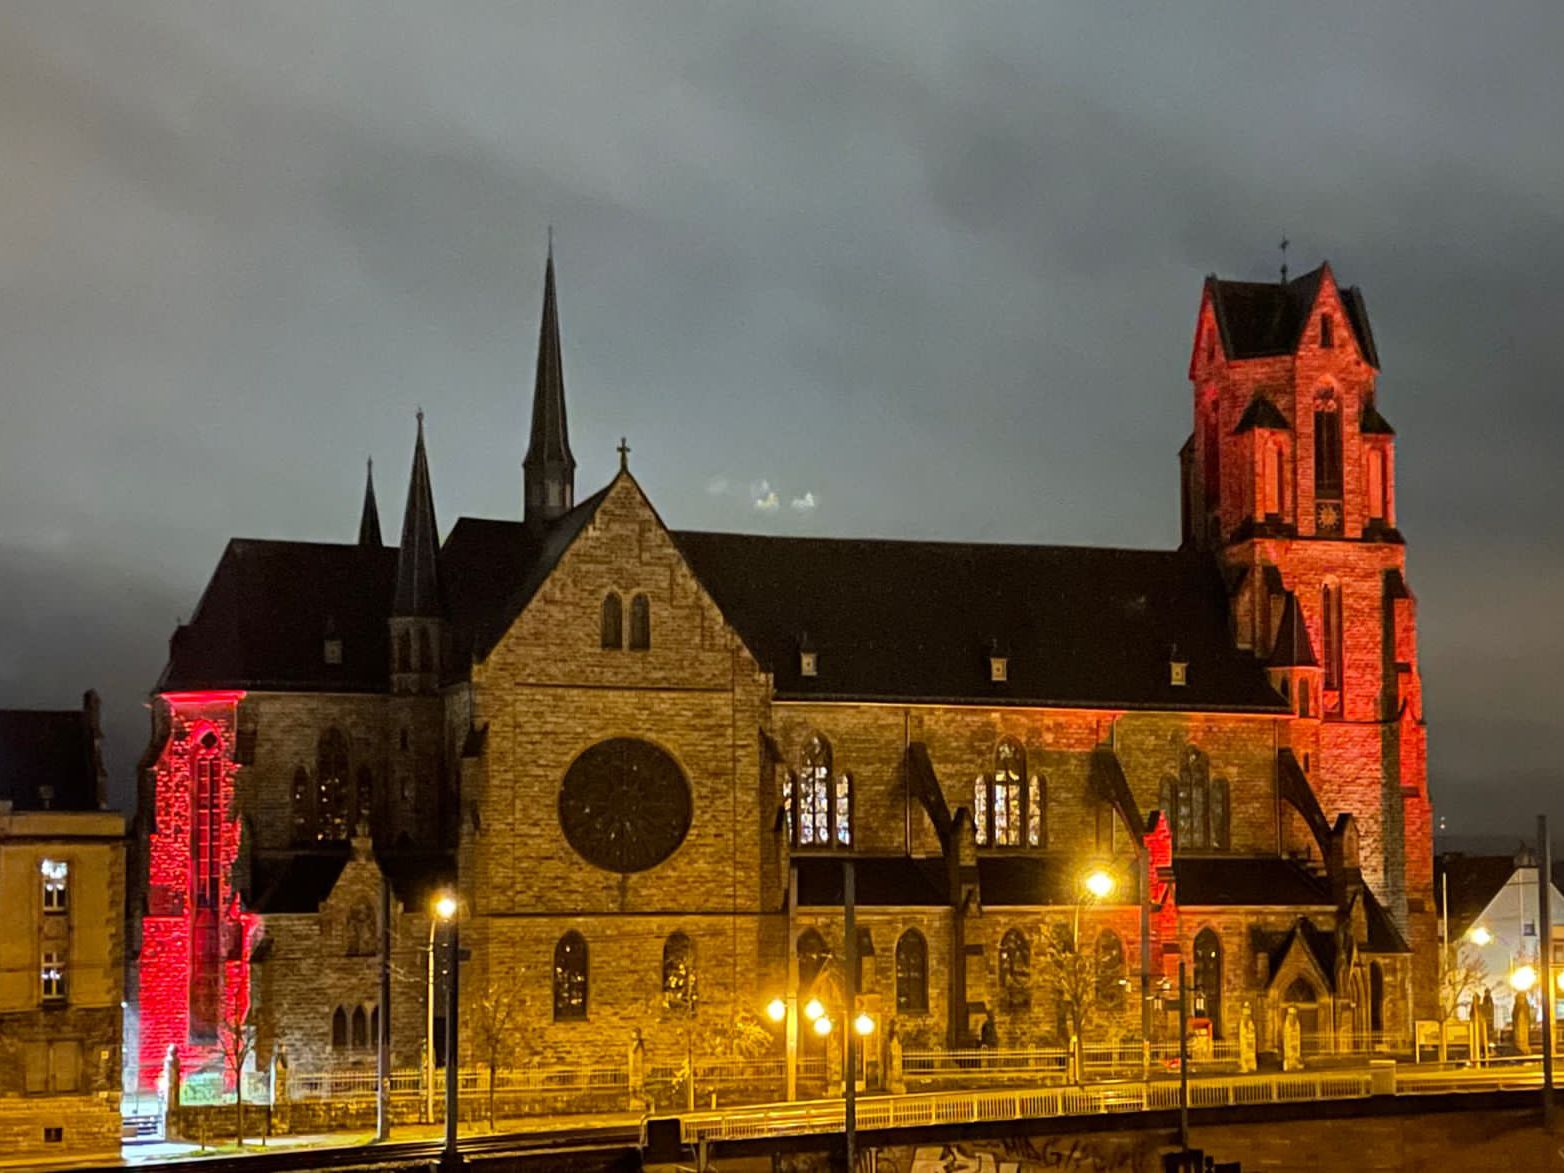 Um auf die Verfolgung von Christen weltweit aufmerksam zu machen, war die Kirche St. Josef in Saarbrücken-Malstatt am Red Wednesday 2022 rot beleuchtet.